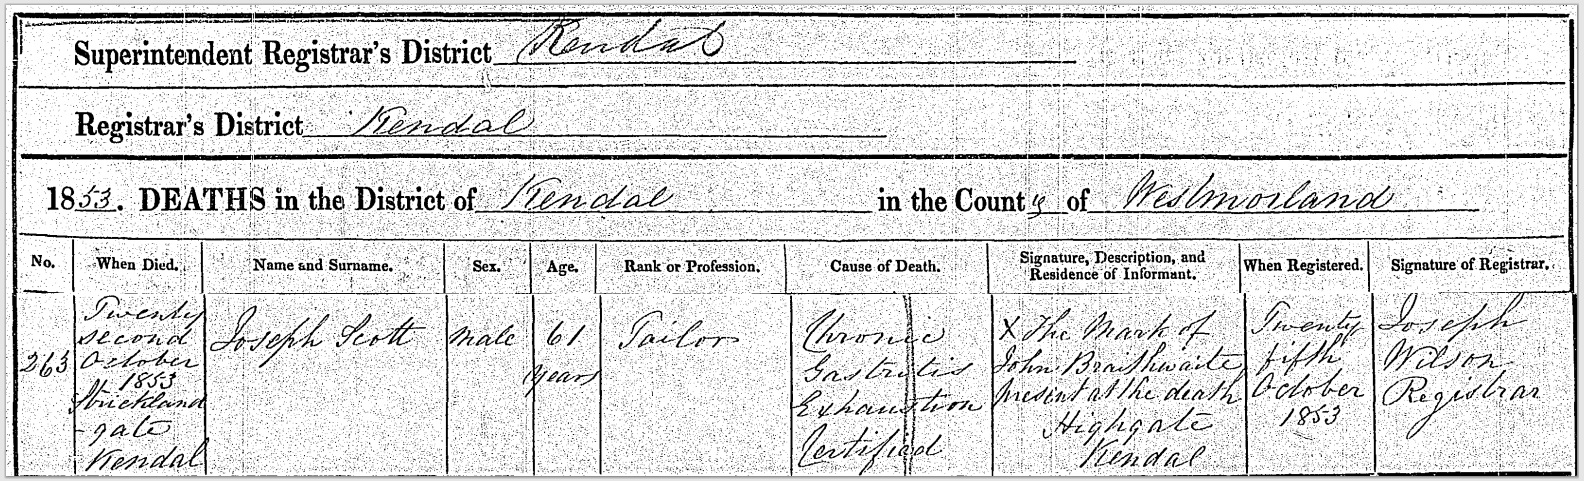 Joseph's death certificate